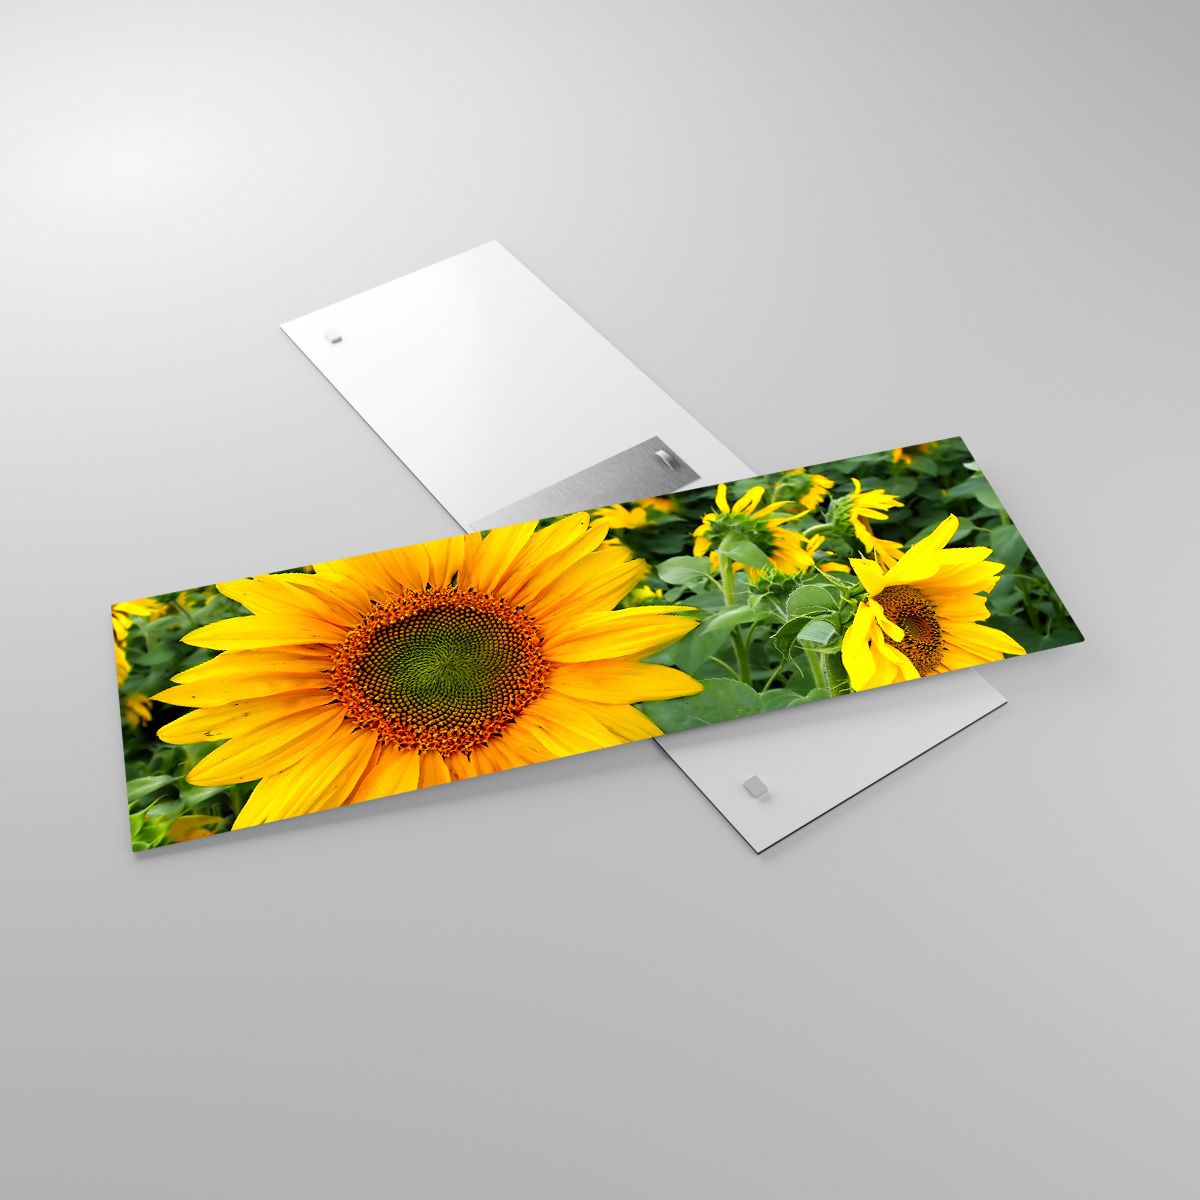 Glasbild Blumen, Glasbild Sonnenblumen, Glasbild Natur, Glasbild Garten, Glasbild Gelbe Blumen